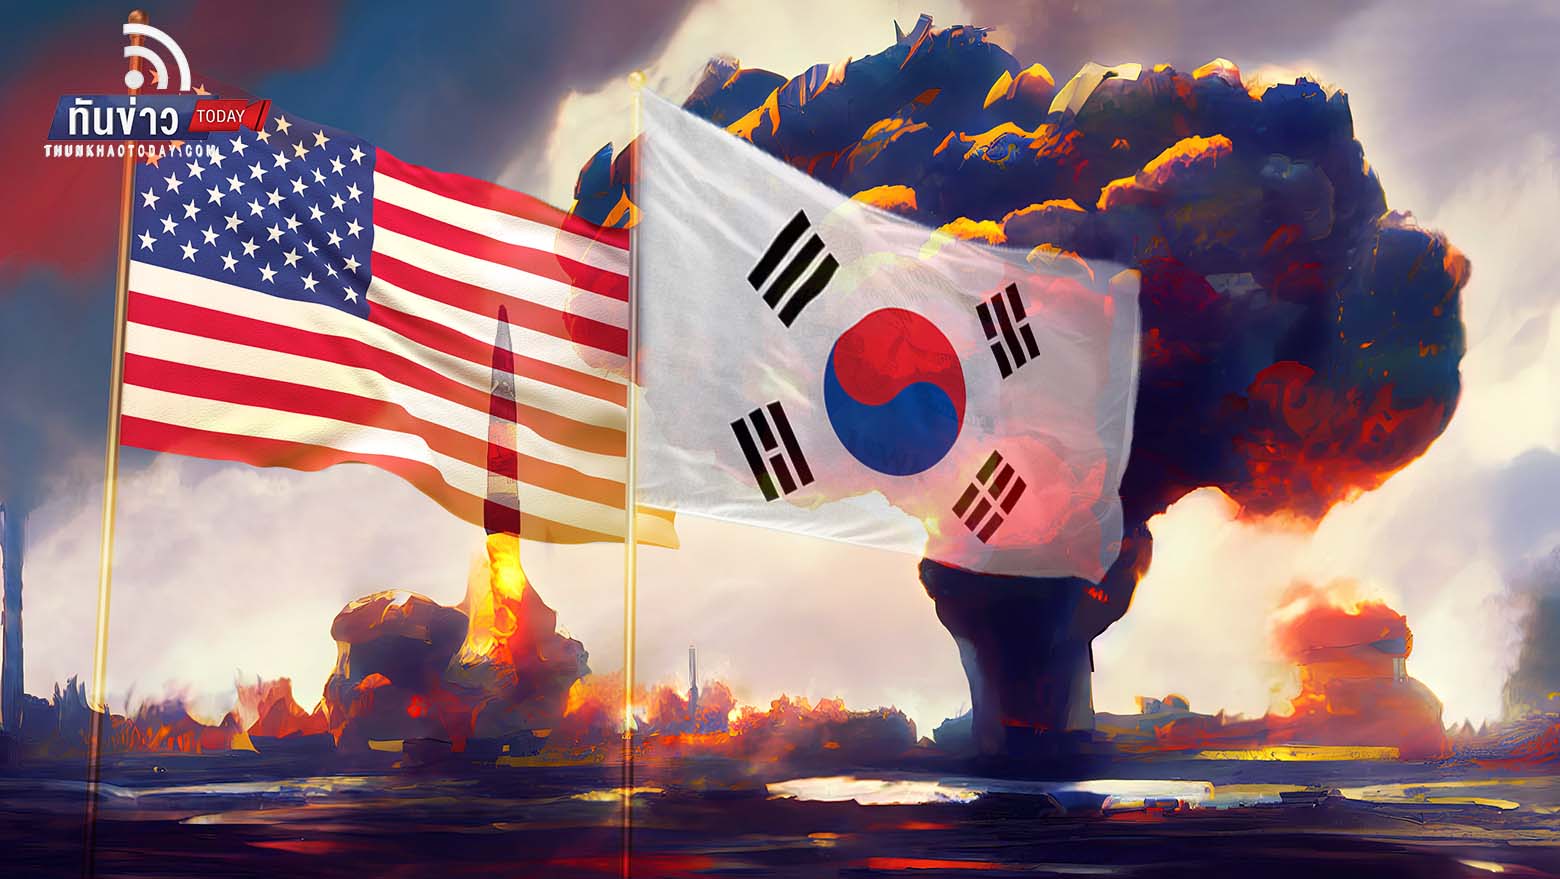 เกาหลีใต้-กองทัพสหรัฐฯ ระดมยิงขีปนาวุธไปทะเลญี่ปุ่น ตอบโต้เกาหลีเหนือที่ยิงขีปนาวุธข้ามเกาะฮอกไกโดเมื่อวานนี้